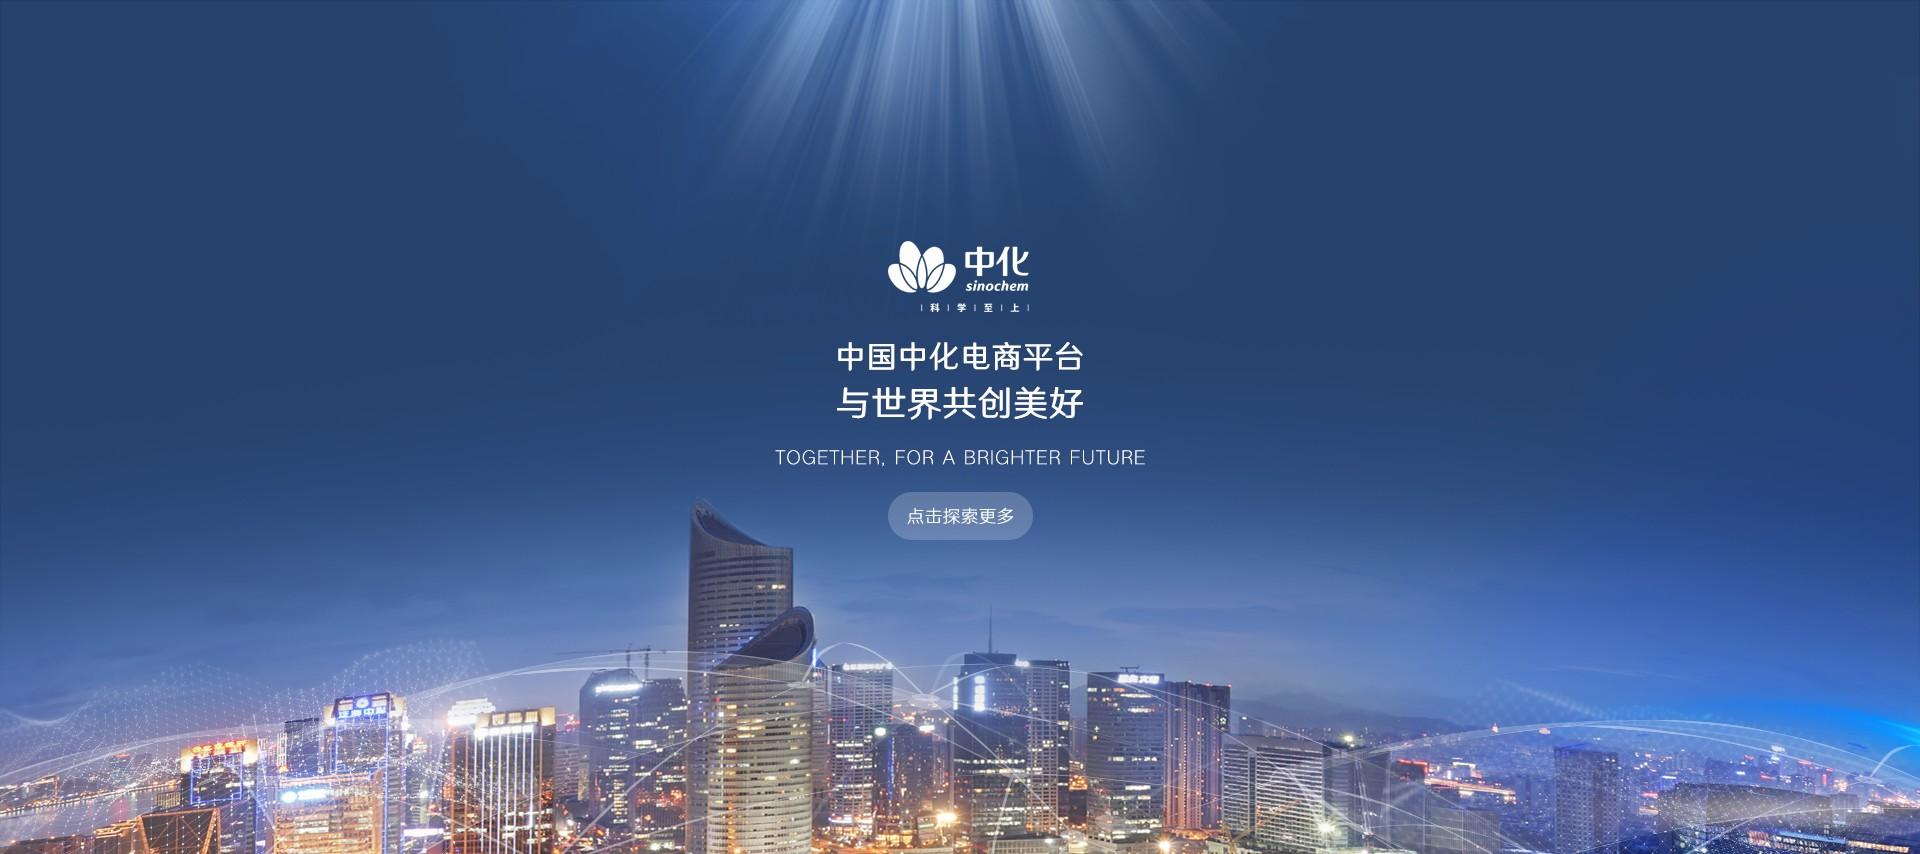 中国中化电商平台上线 推动化工行业数字化发展